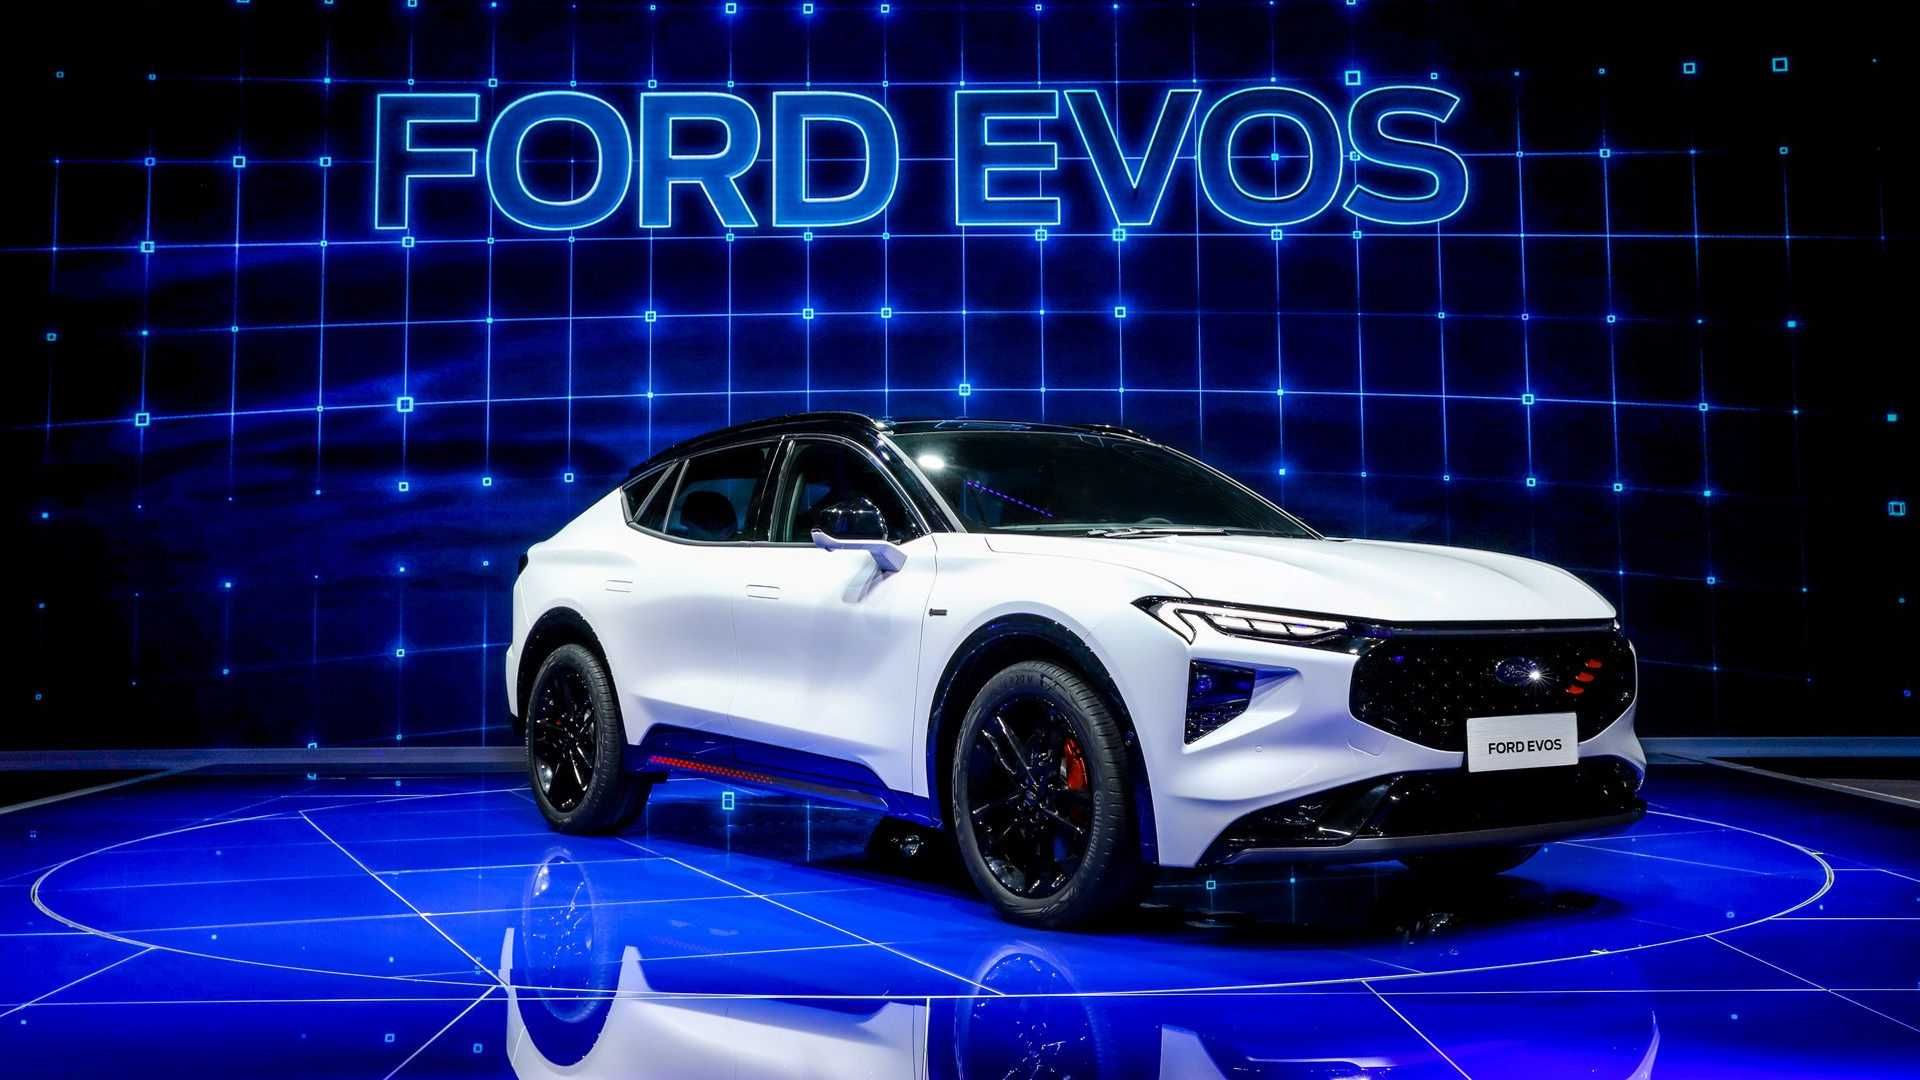 مرجع متخصصين ايران نماي جلو از خودرو شاسي بلند فورد ايوس /  Ford Evos SUV